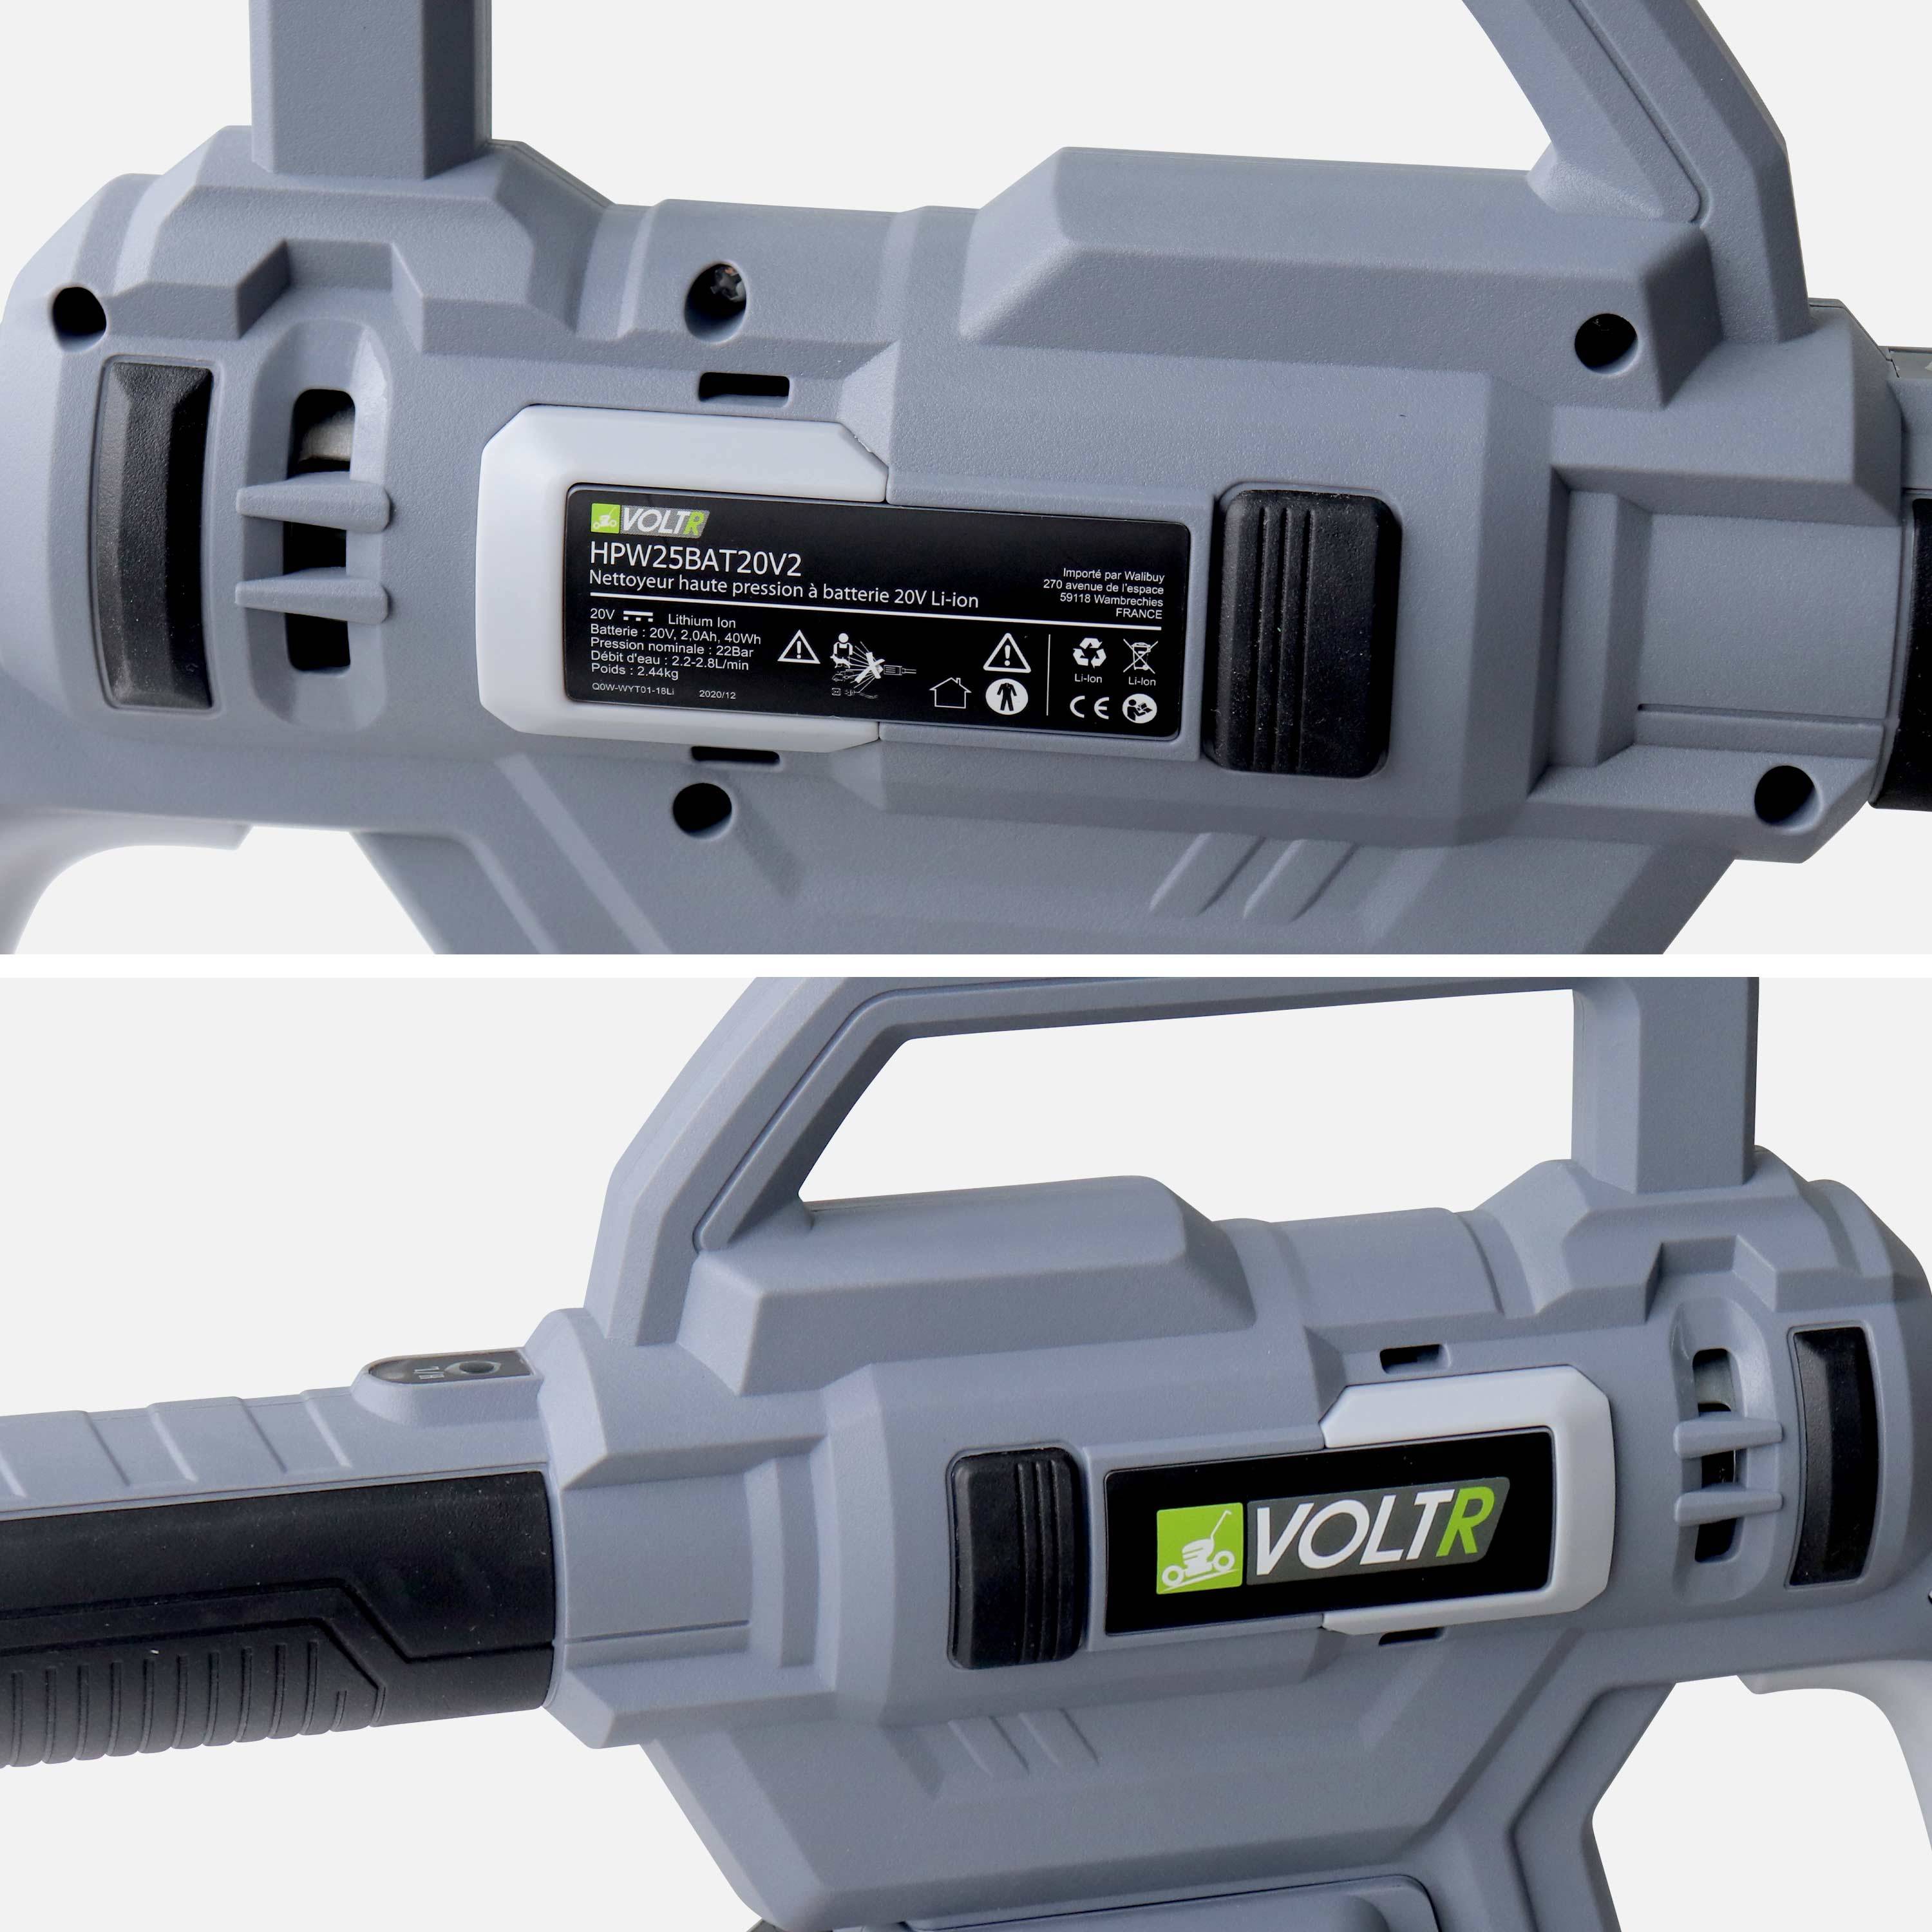 VOLTR - Pistola de lavado a presión de 25 bar con batería de 20V - juego completo de accesorios que incluye cepillo, boquilla de pulverización variable, depósito de detergente, batería y cargador   ,sweeek,Photo6